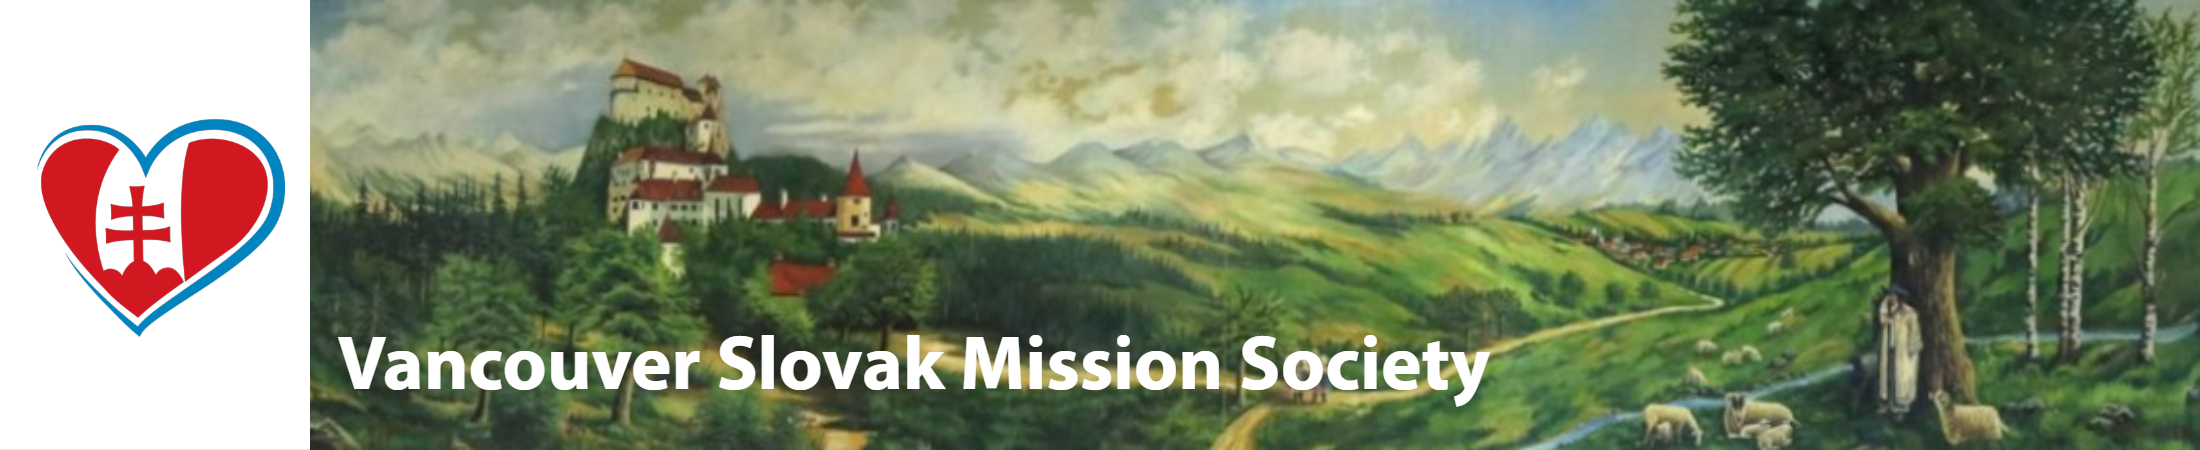 Vancouver Slovak Mission Society.